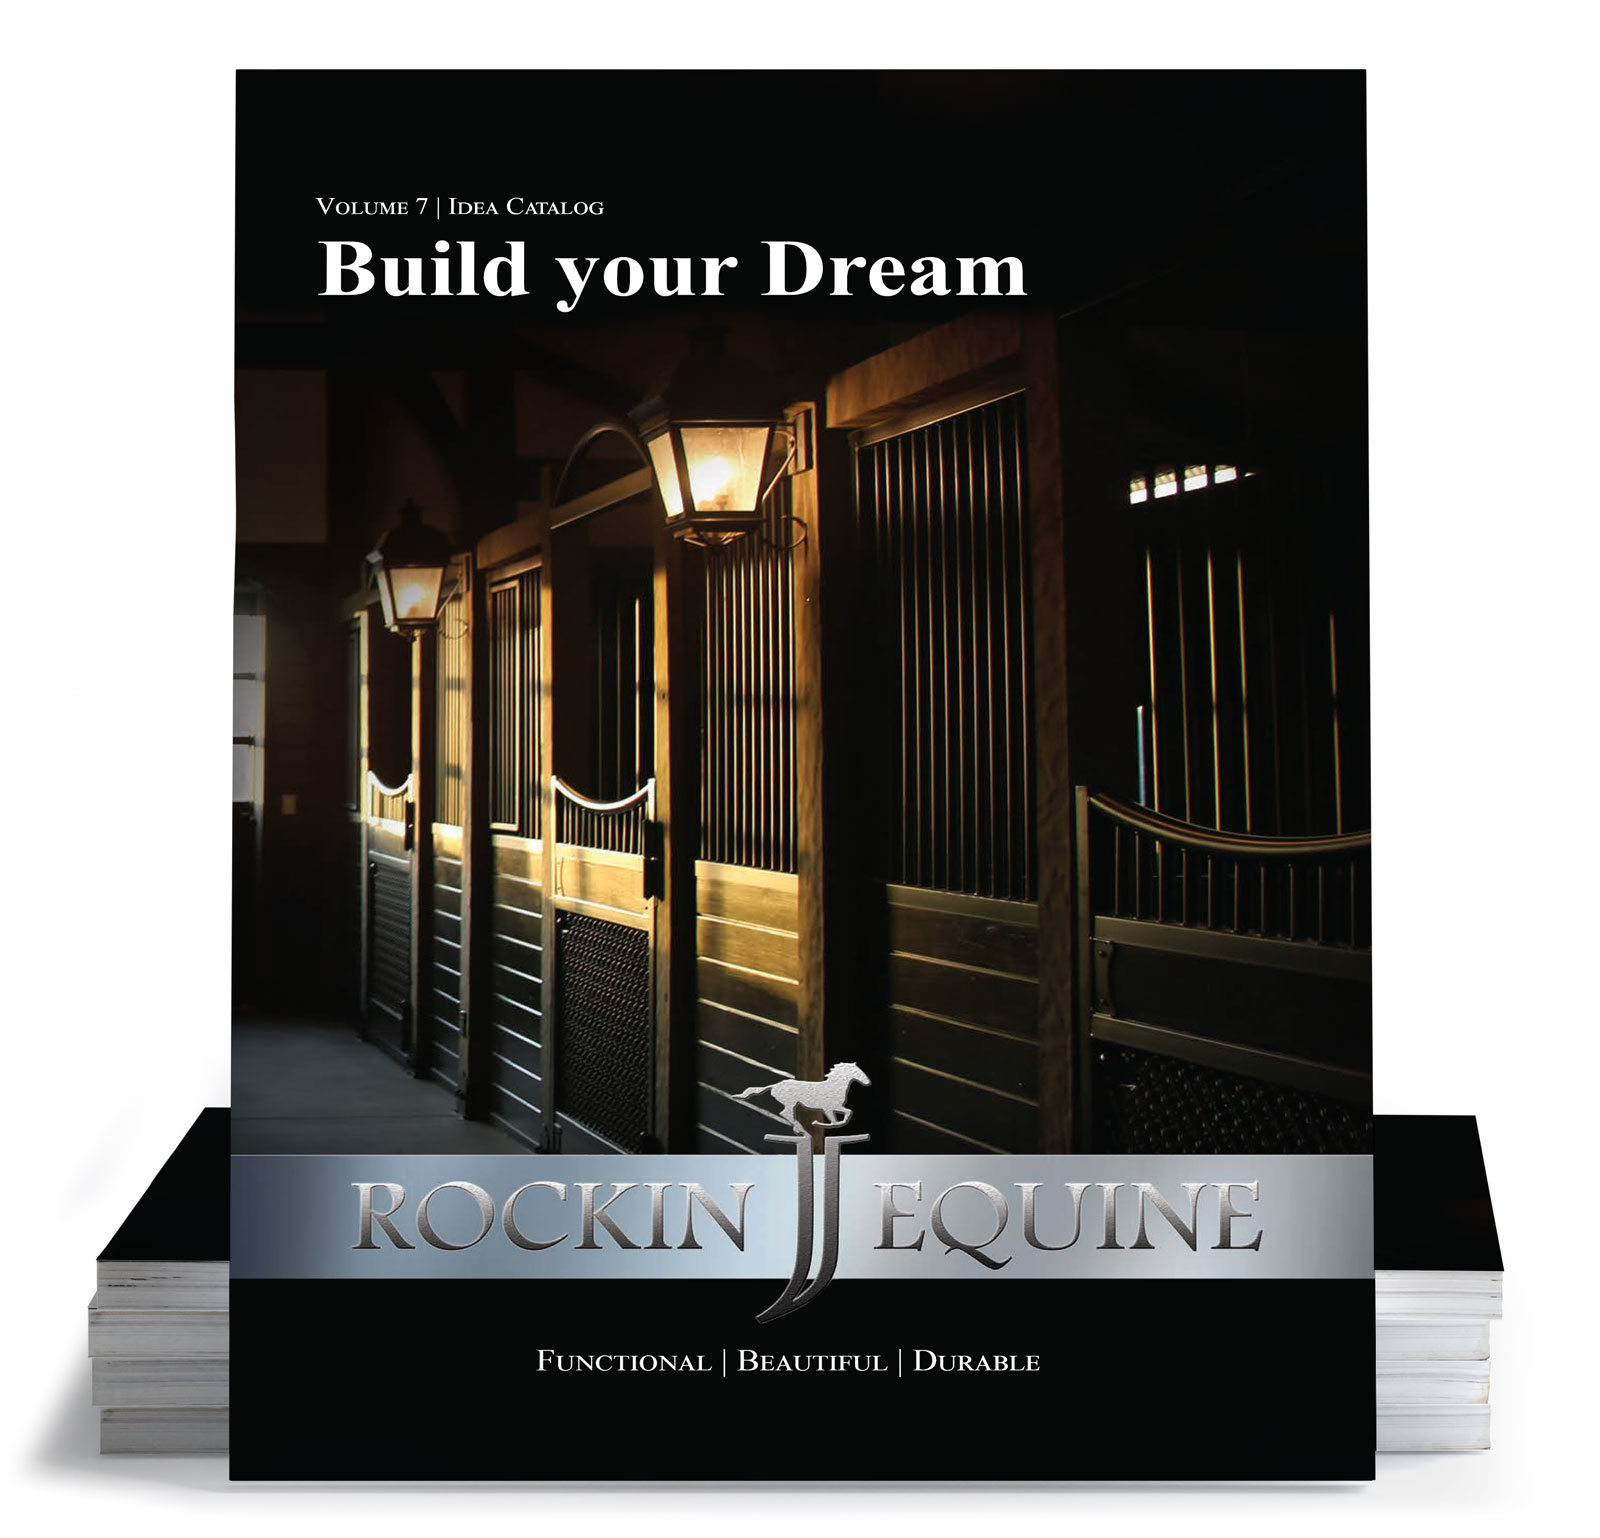 The rockin J equine catalog cover